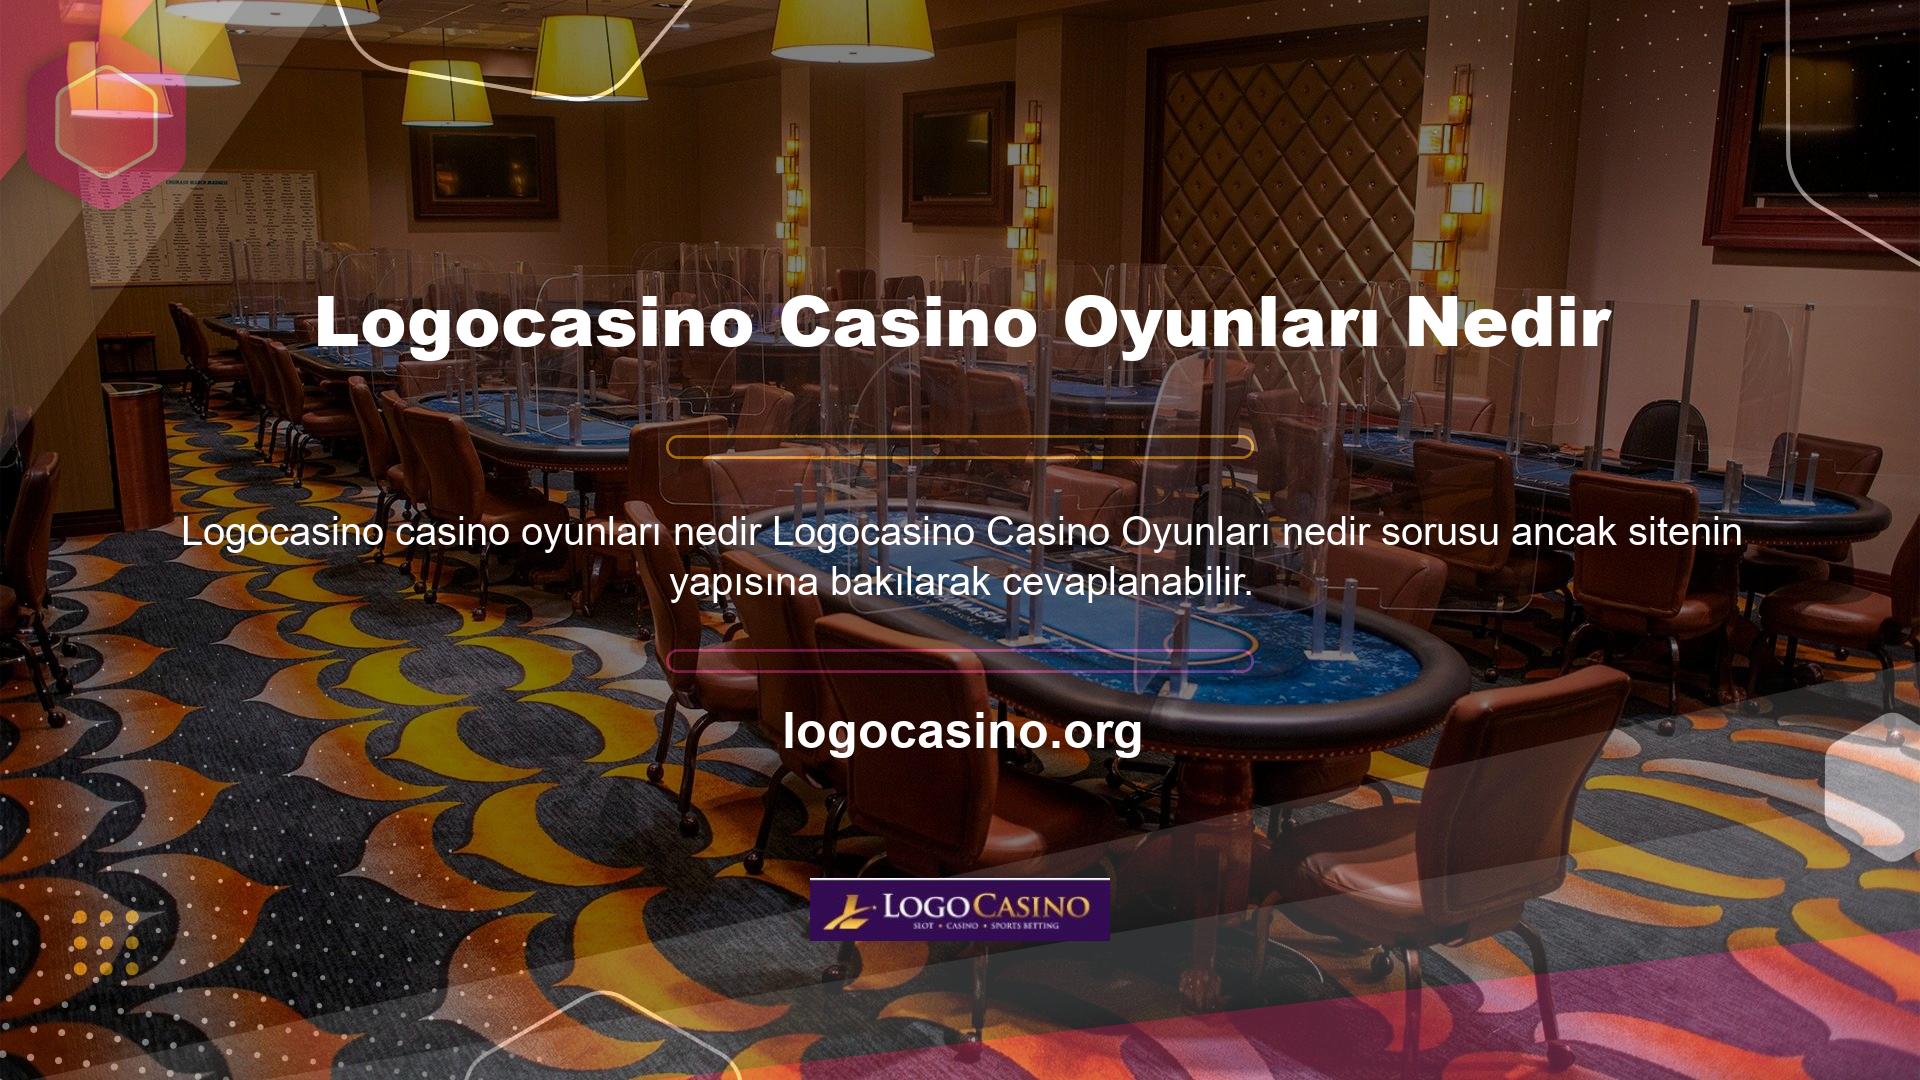 Site, canlı casino bölümünde birçok karmaşık hizmet sunmaktadır ve bu bölüme slot makineleri de eklenmiştir